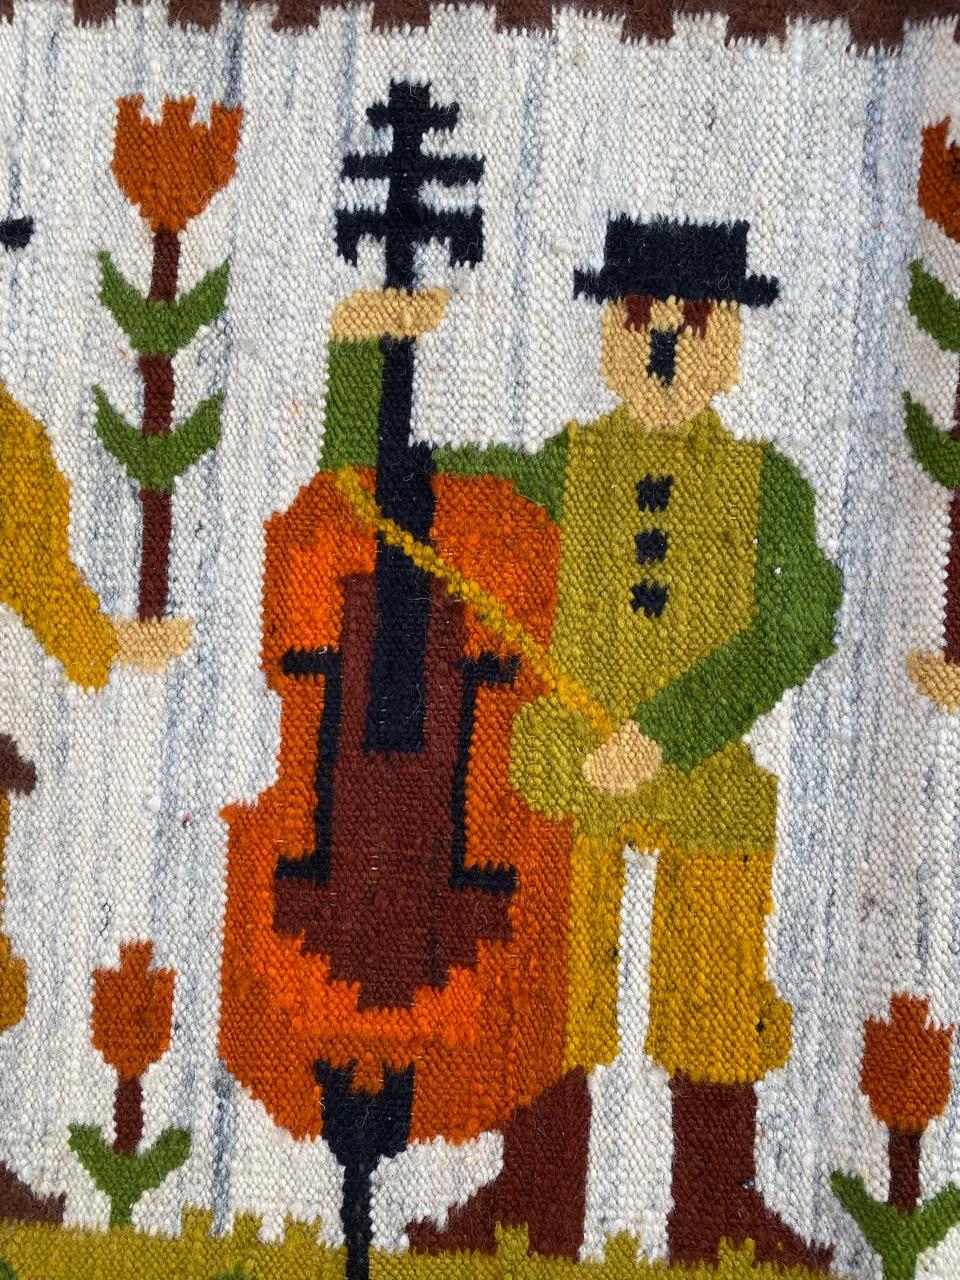 Très belle tapisserie polonaise Kilim du milieu du siècle dernier, avec un beau design indigène et de belles couleurs, entièrement tissée à la main avec de la laine sur une base de coton.

✨✨✨
